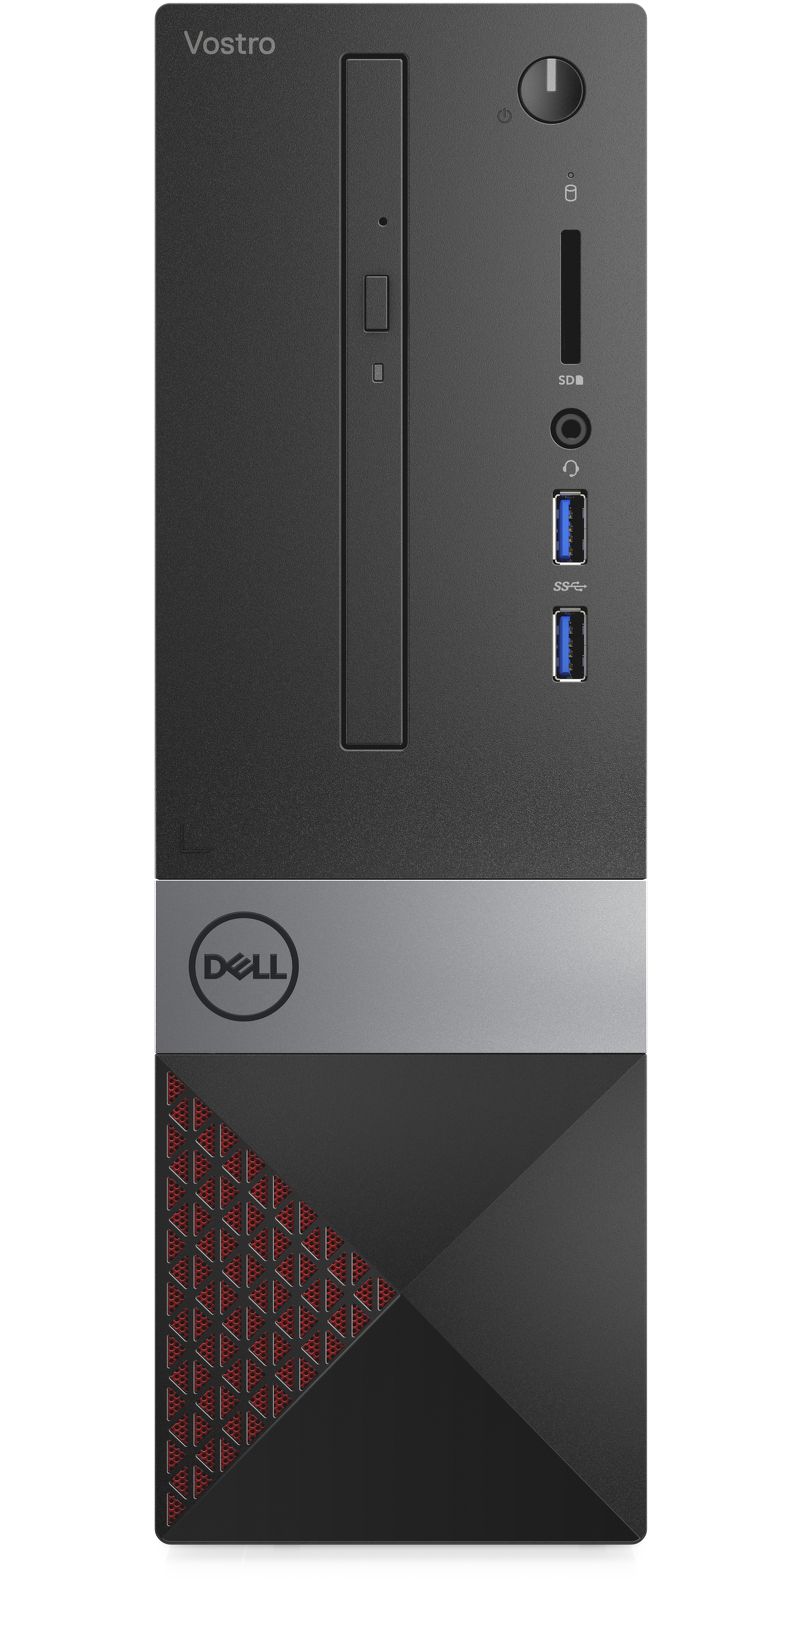 Máy tính đồng bộ Dell Vostro 3471/ i5-9400-2.9G/ 4G/ 1T/DVDRW/ WL+BT/ Black (70202290)